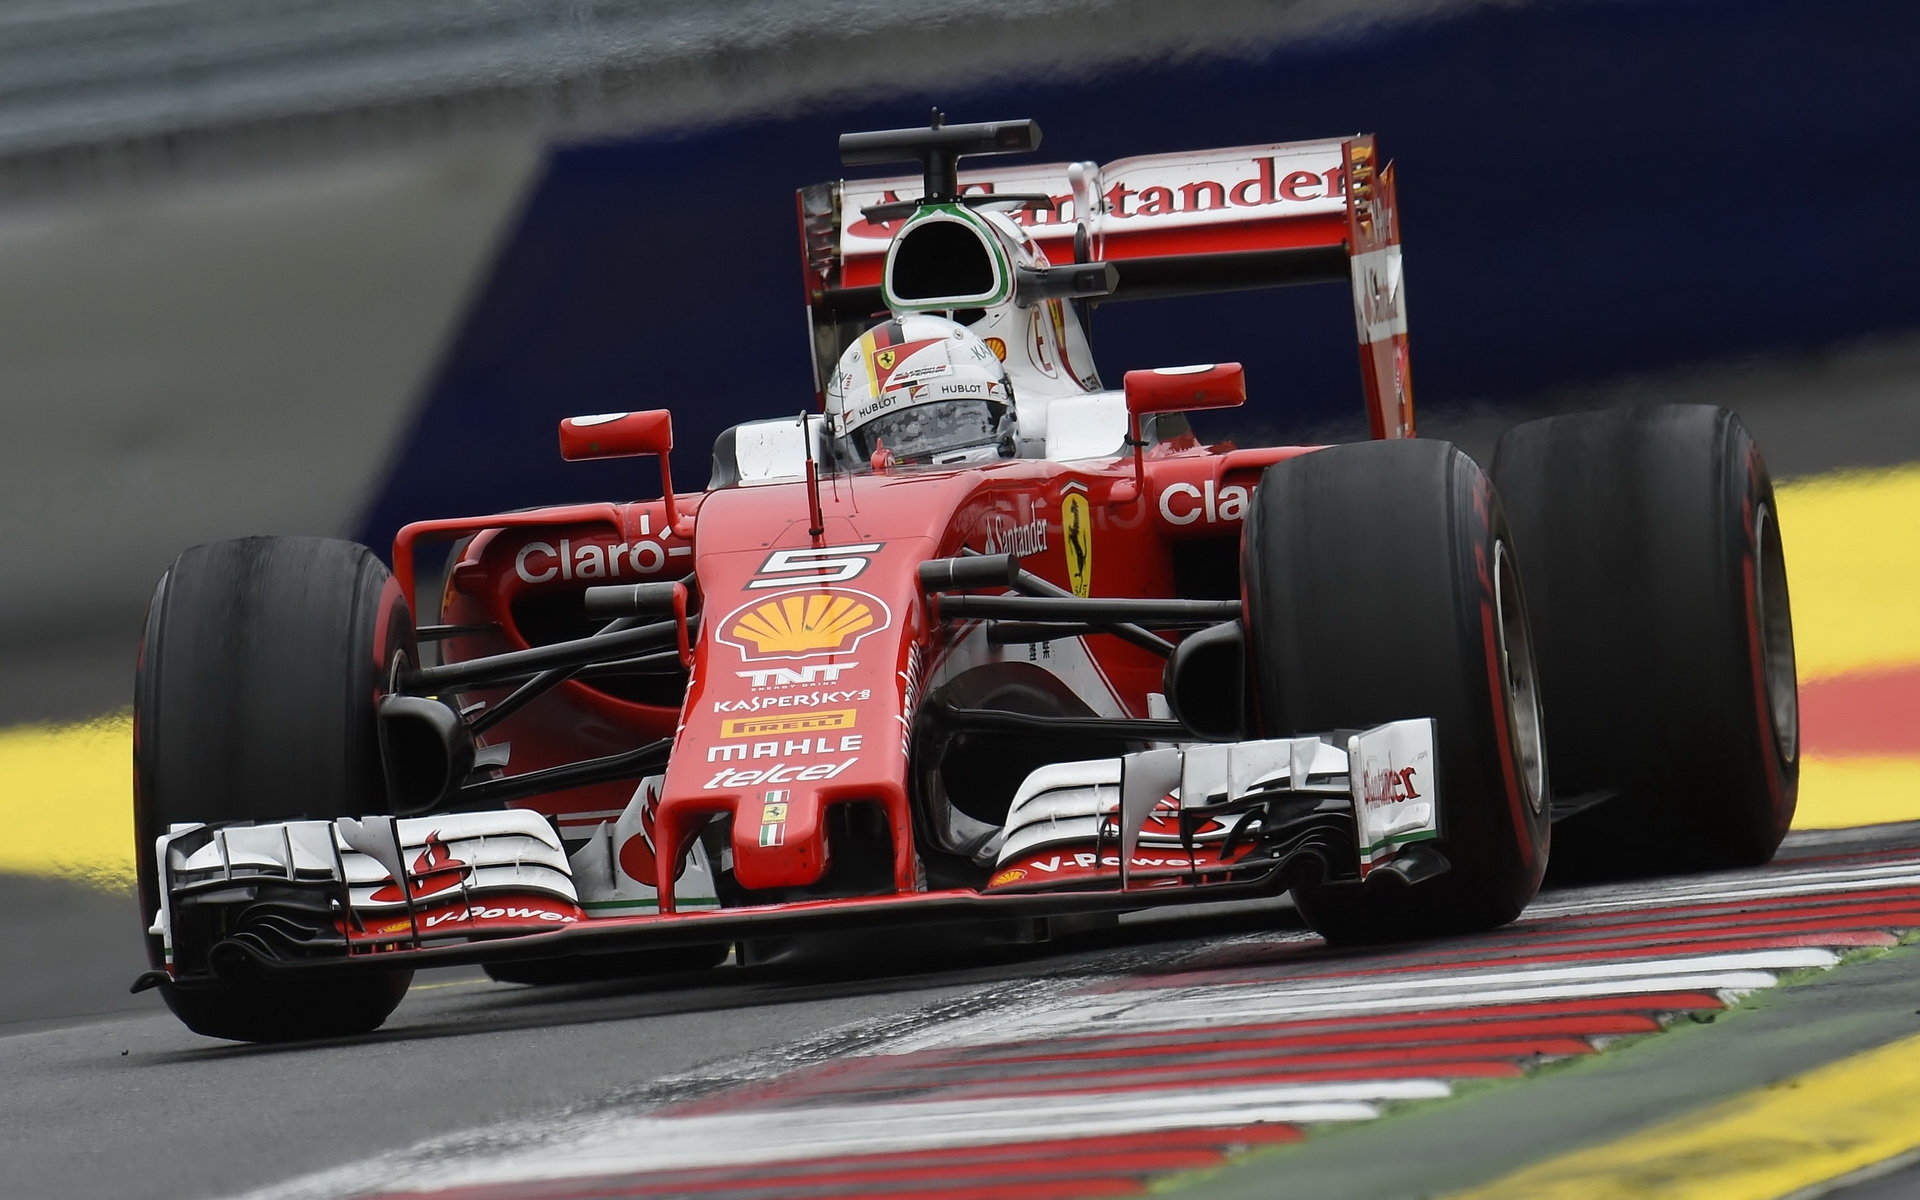 Sebastian Vettel v závodě na Red Bull Ringu